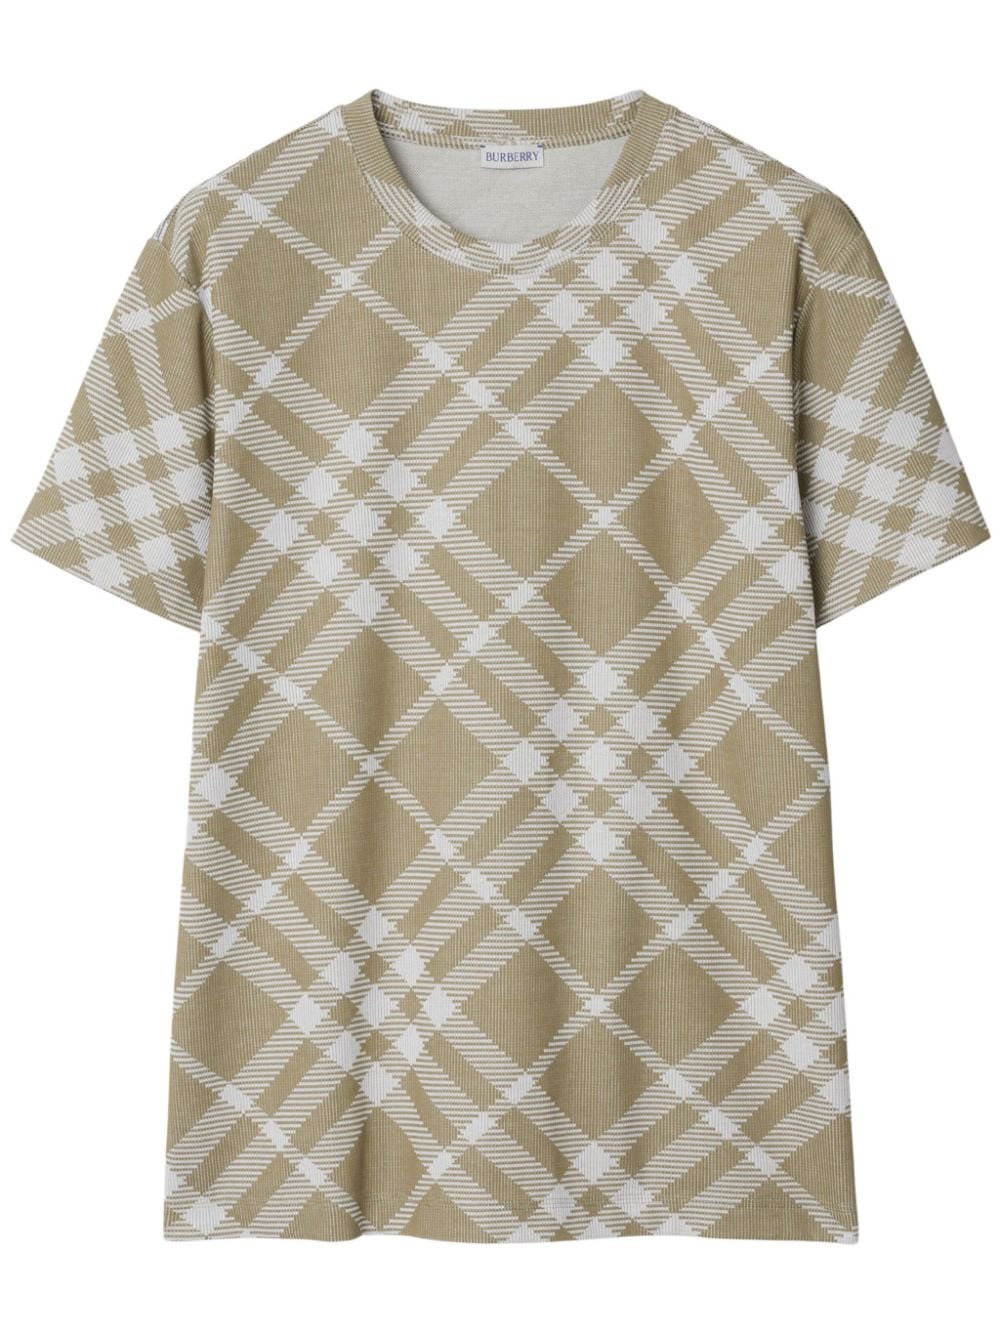 Burberry Nova Check short-sleeve T-shirt - Neutrals